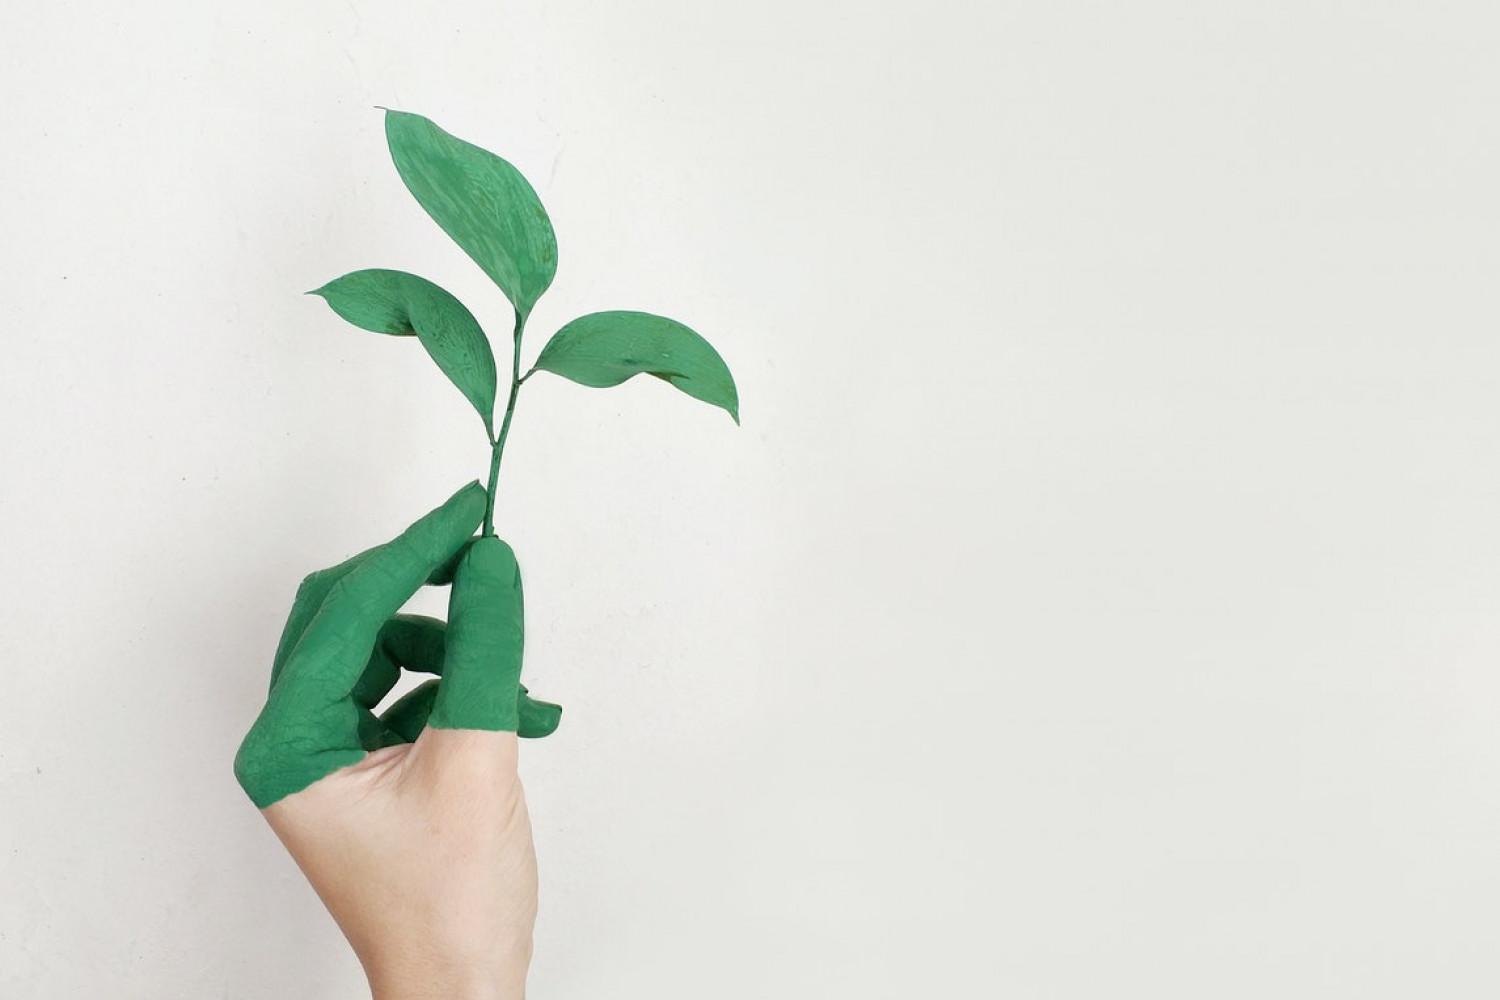 Er din virksomhed klar til de nye ESG-krav?